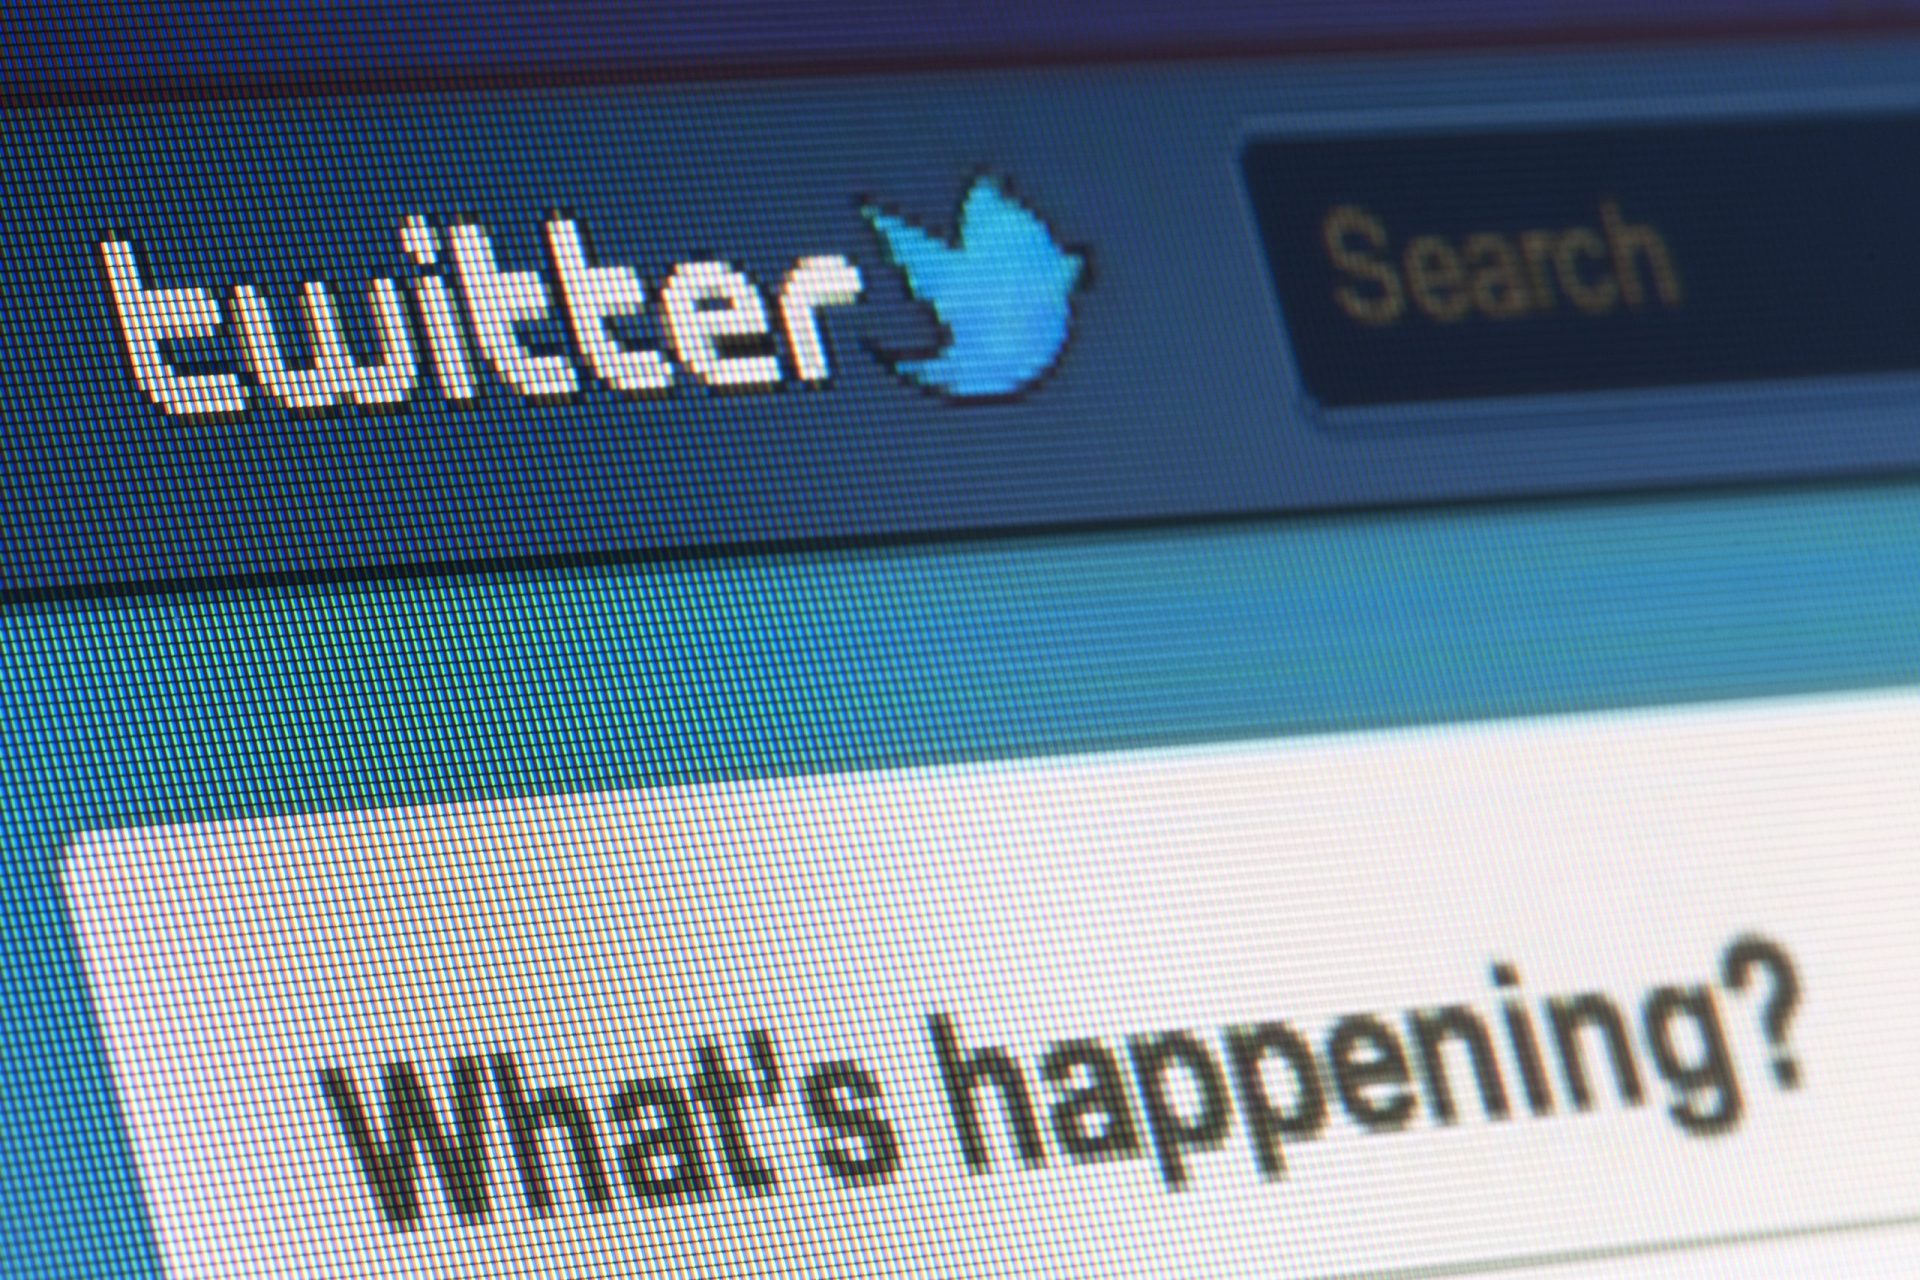 Um tweet preveniu um massacre numa escola americana